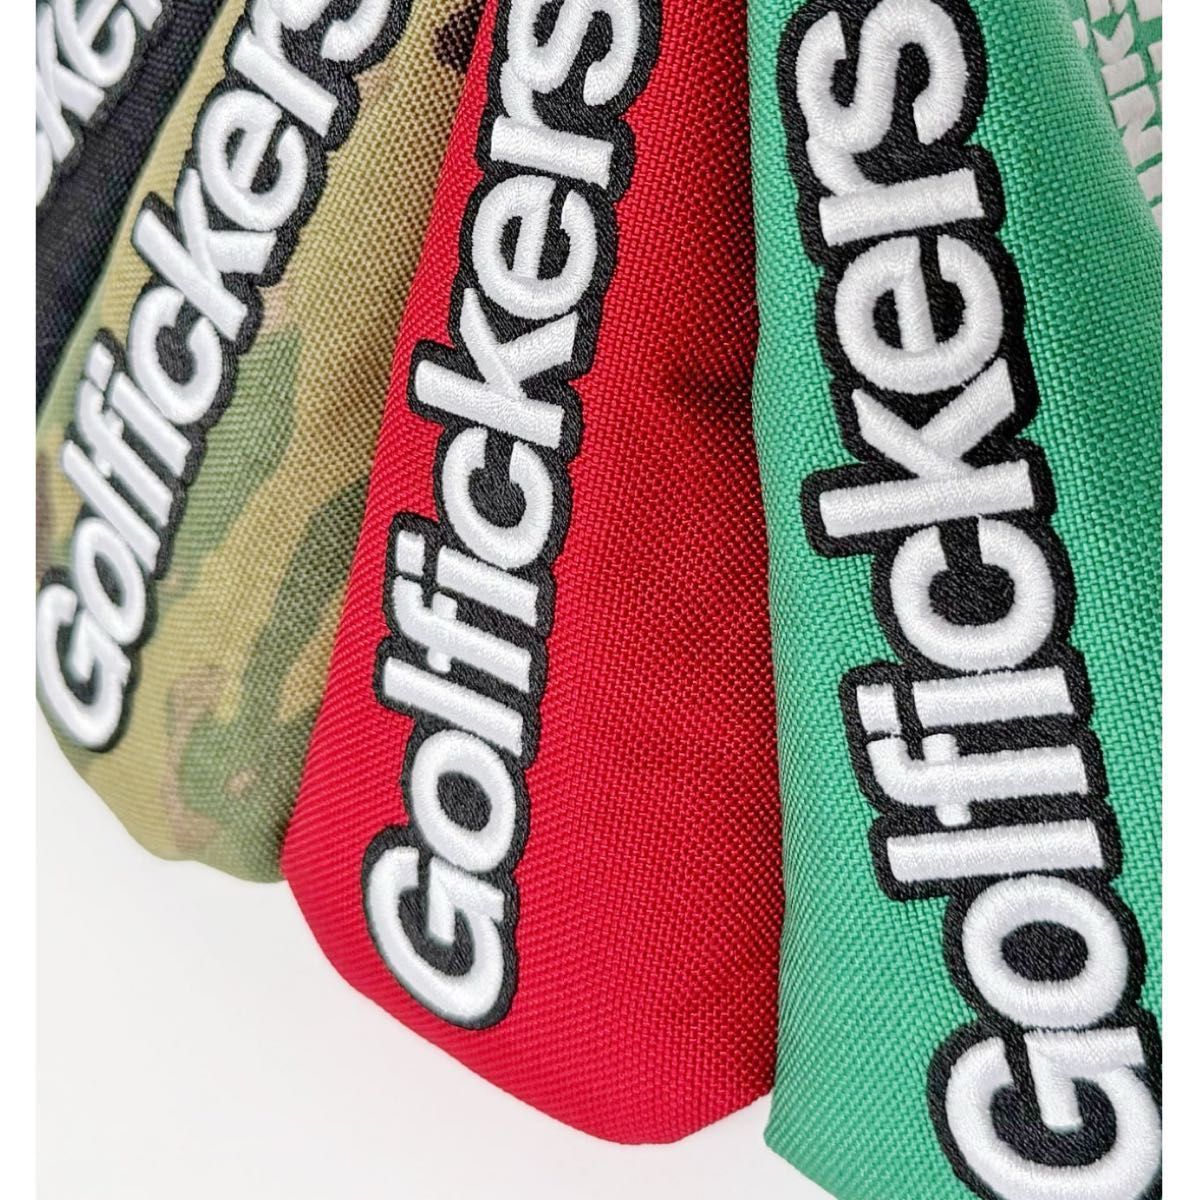 【即完売】Golfickers G-putter cover ピンタイプ 緑 グリーン 新品未開封